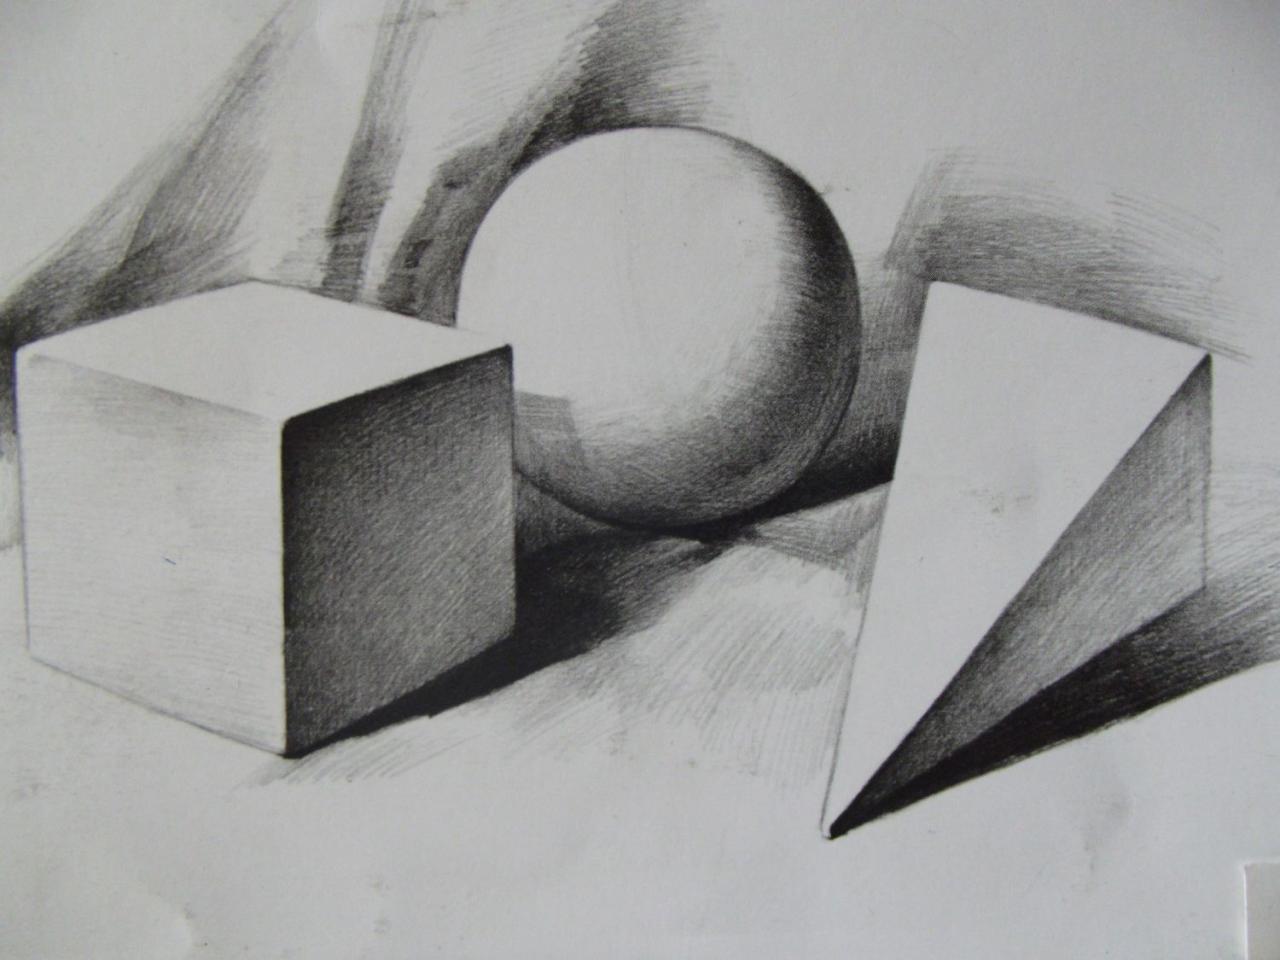 少儿学素描系列教程之三球体,正方体,四棱锥体的组合画法